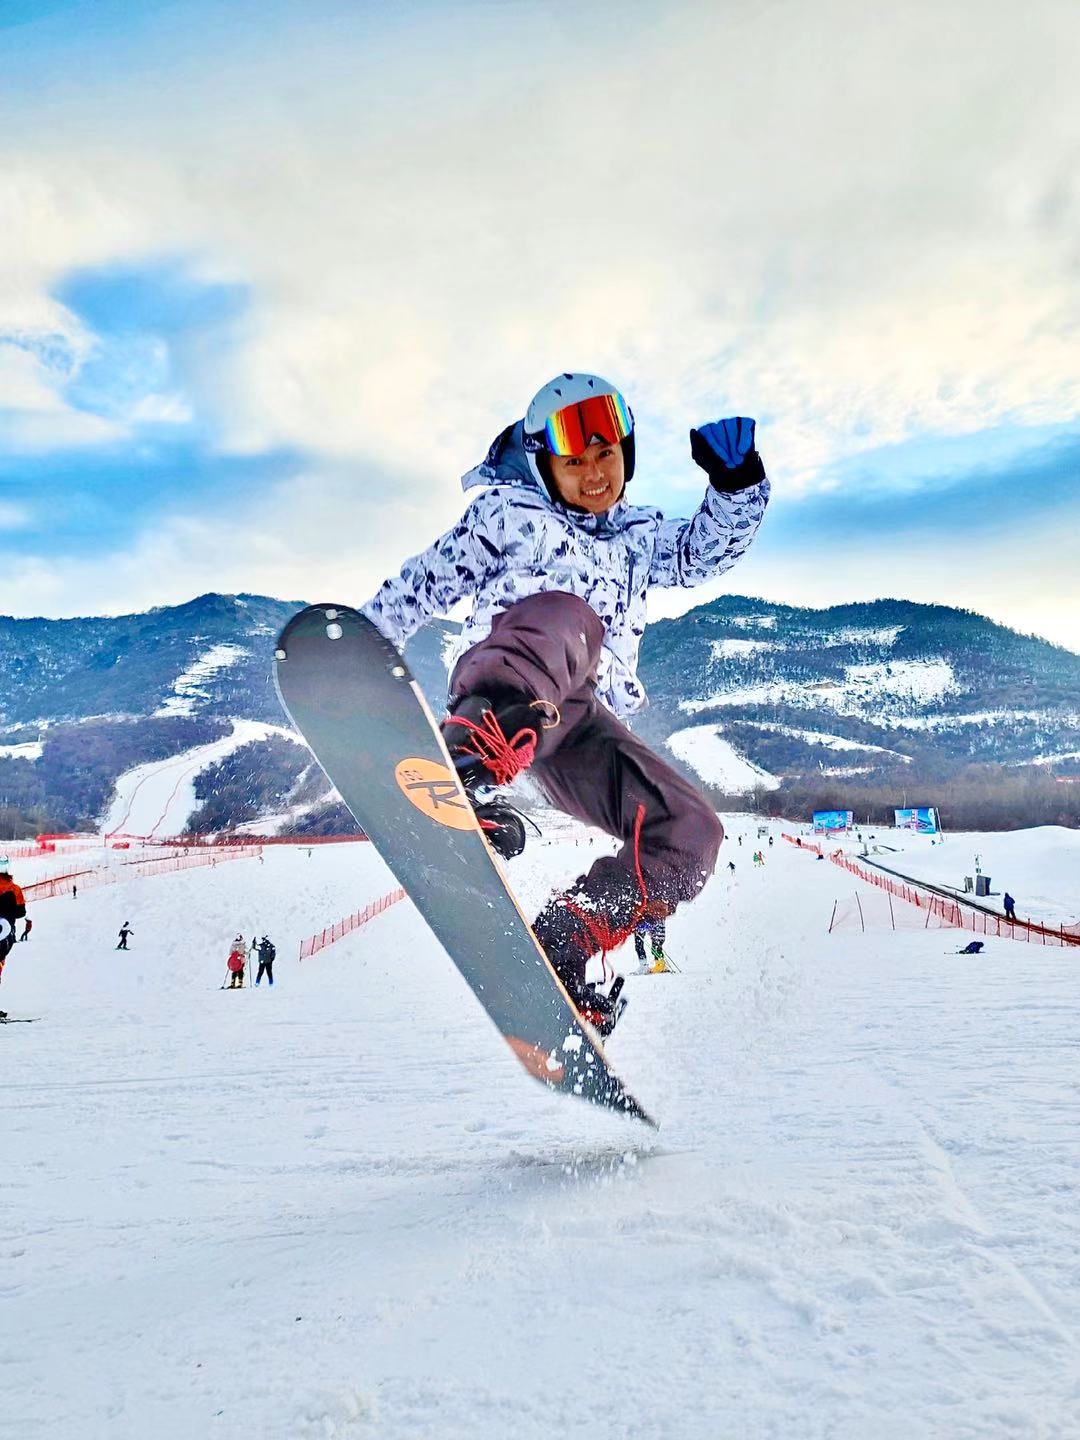 嵩县木札岭速龙滑雪场有限公司 滑雪新天地、雪上飞碟、滑草乐园